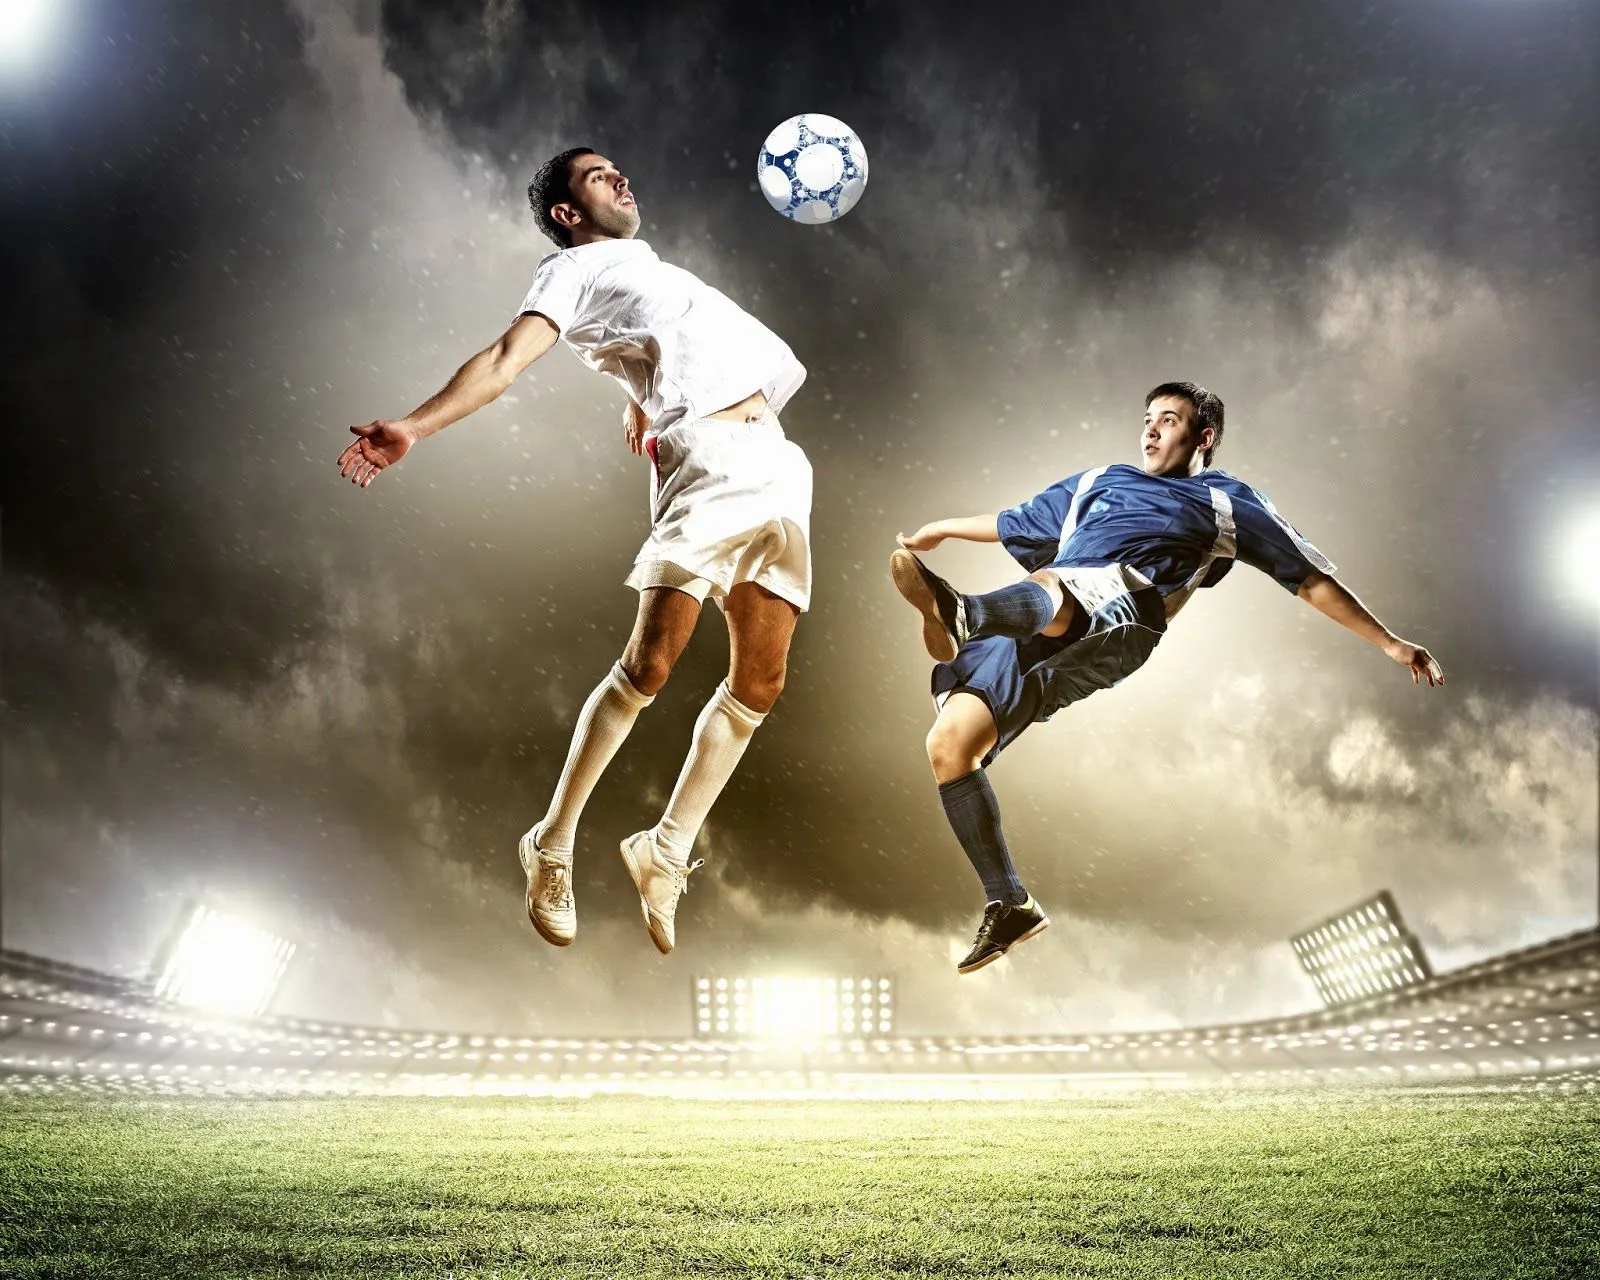 Jugadores de fútbol soccer practicando en el estadio | Banco de ...